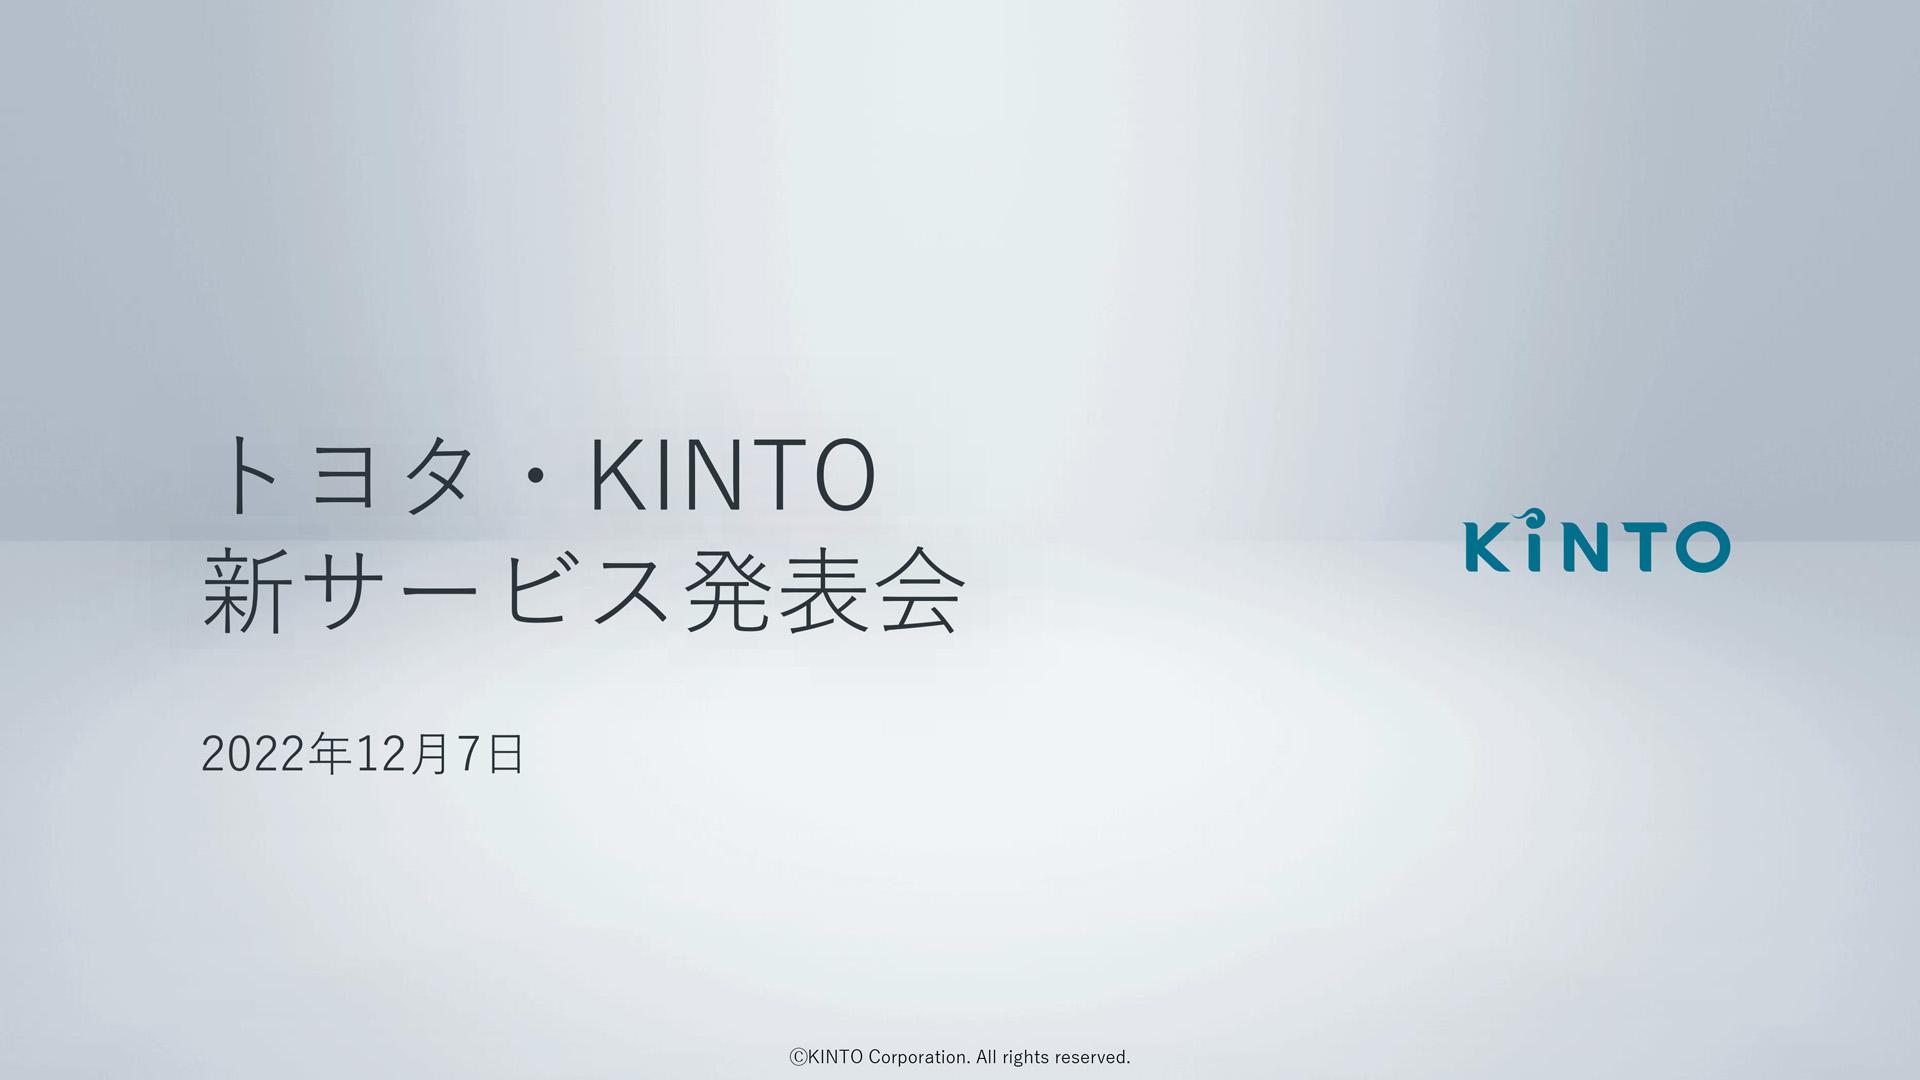 トヨタ・ KINTO 新サービスに関する発表会